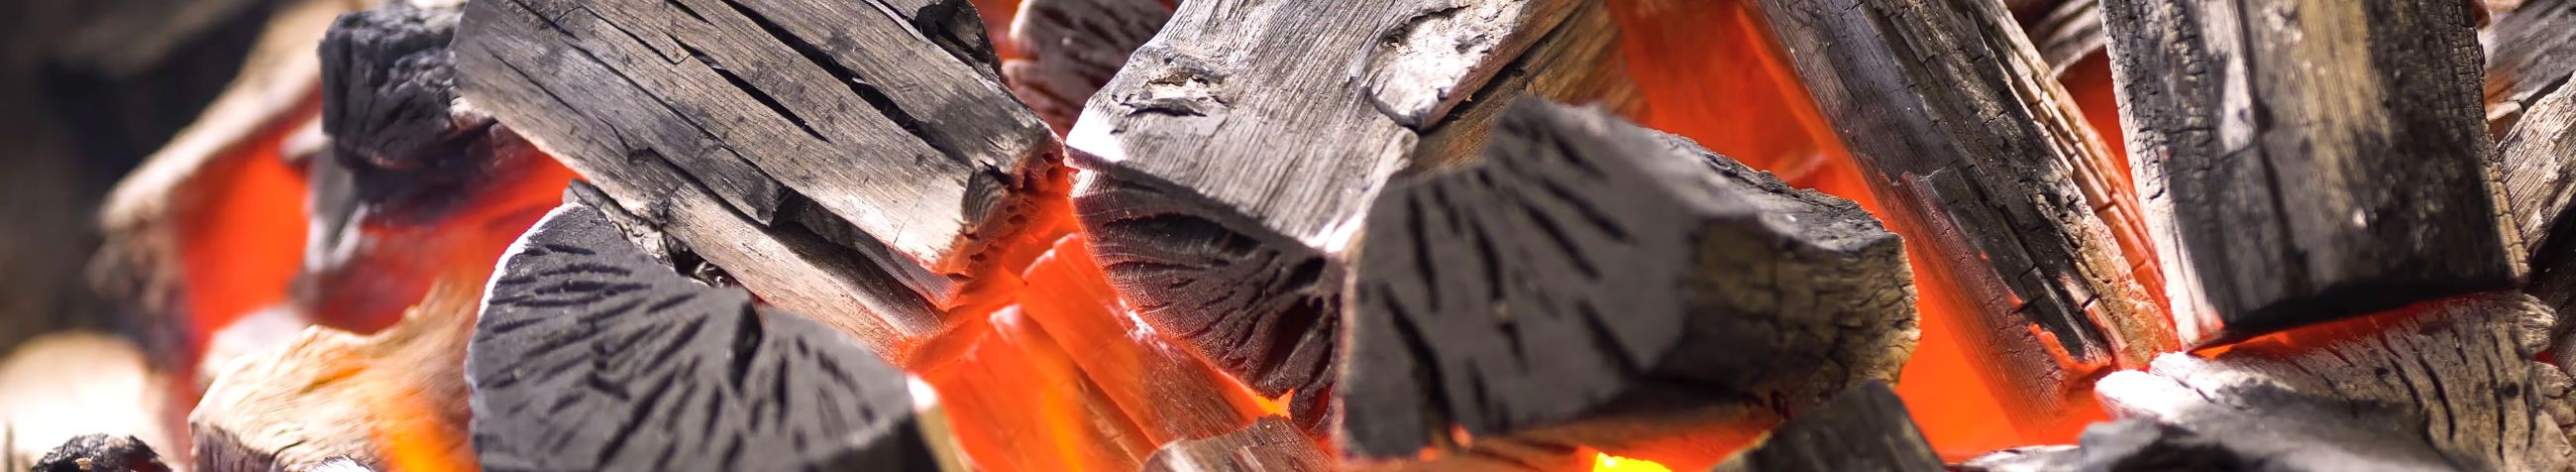 PRUTT OÜ pakub kvaliteetseid heledaid kandilisi puitbrikette, tagades tõhusa ja keskkonnasõbraliku kütte lahenduse koos mugava kohaletoimetamisega Valga-, Võru- ja Põlvamaal.